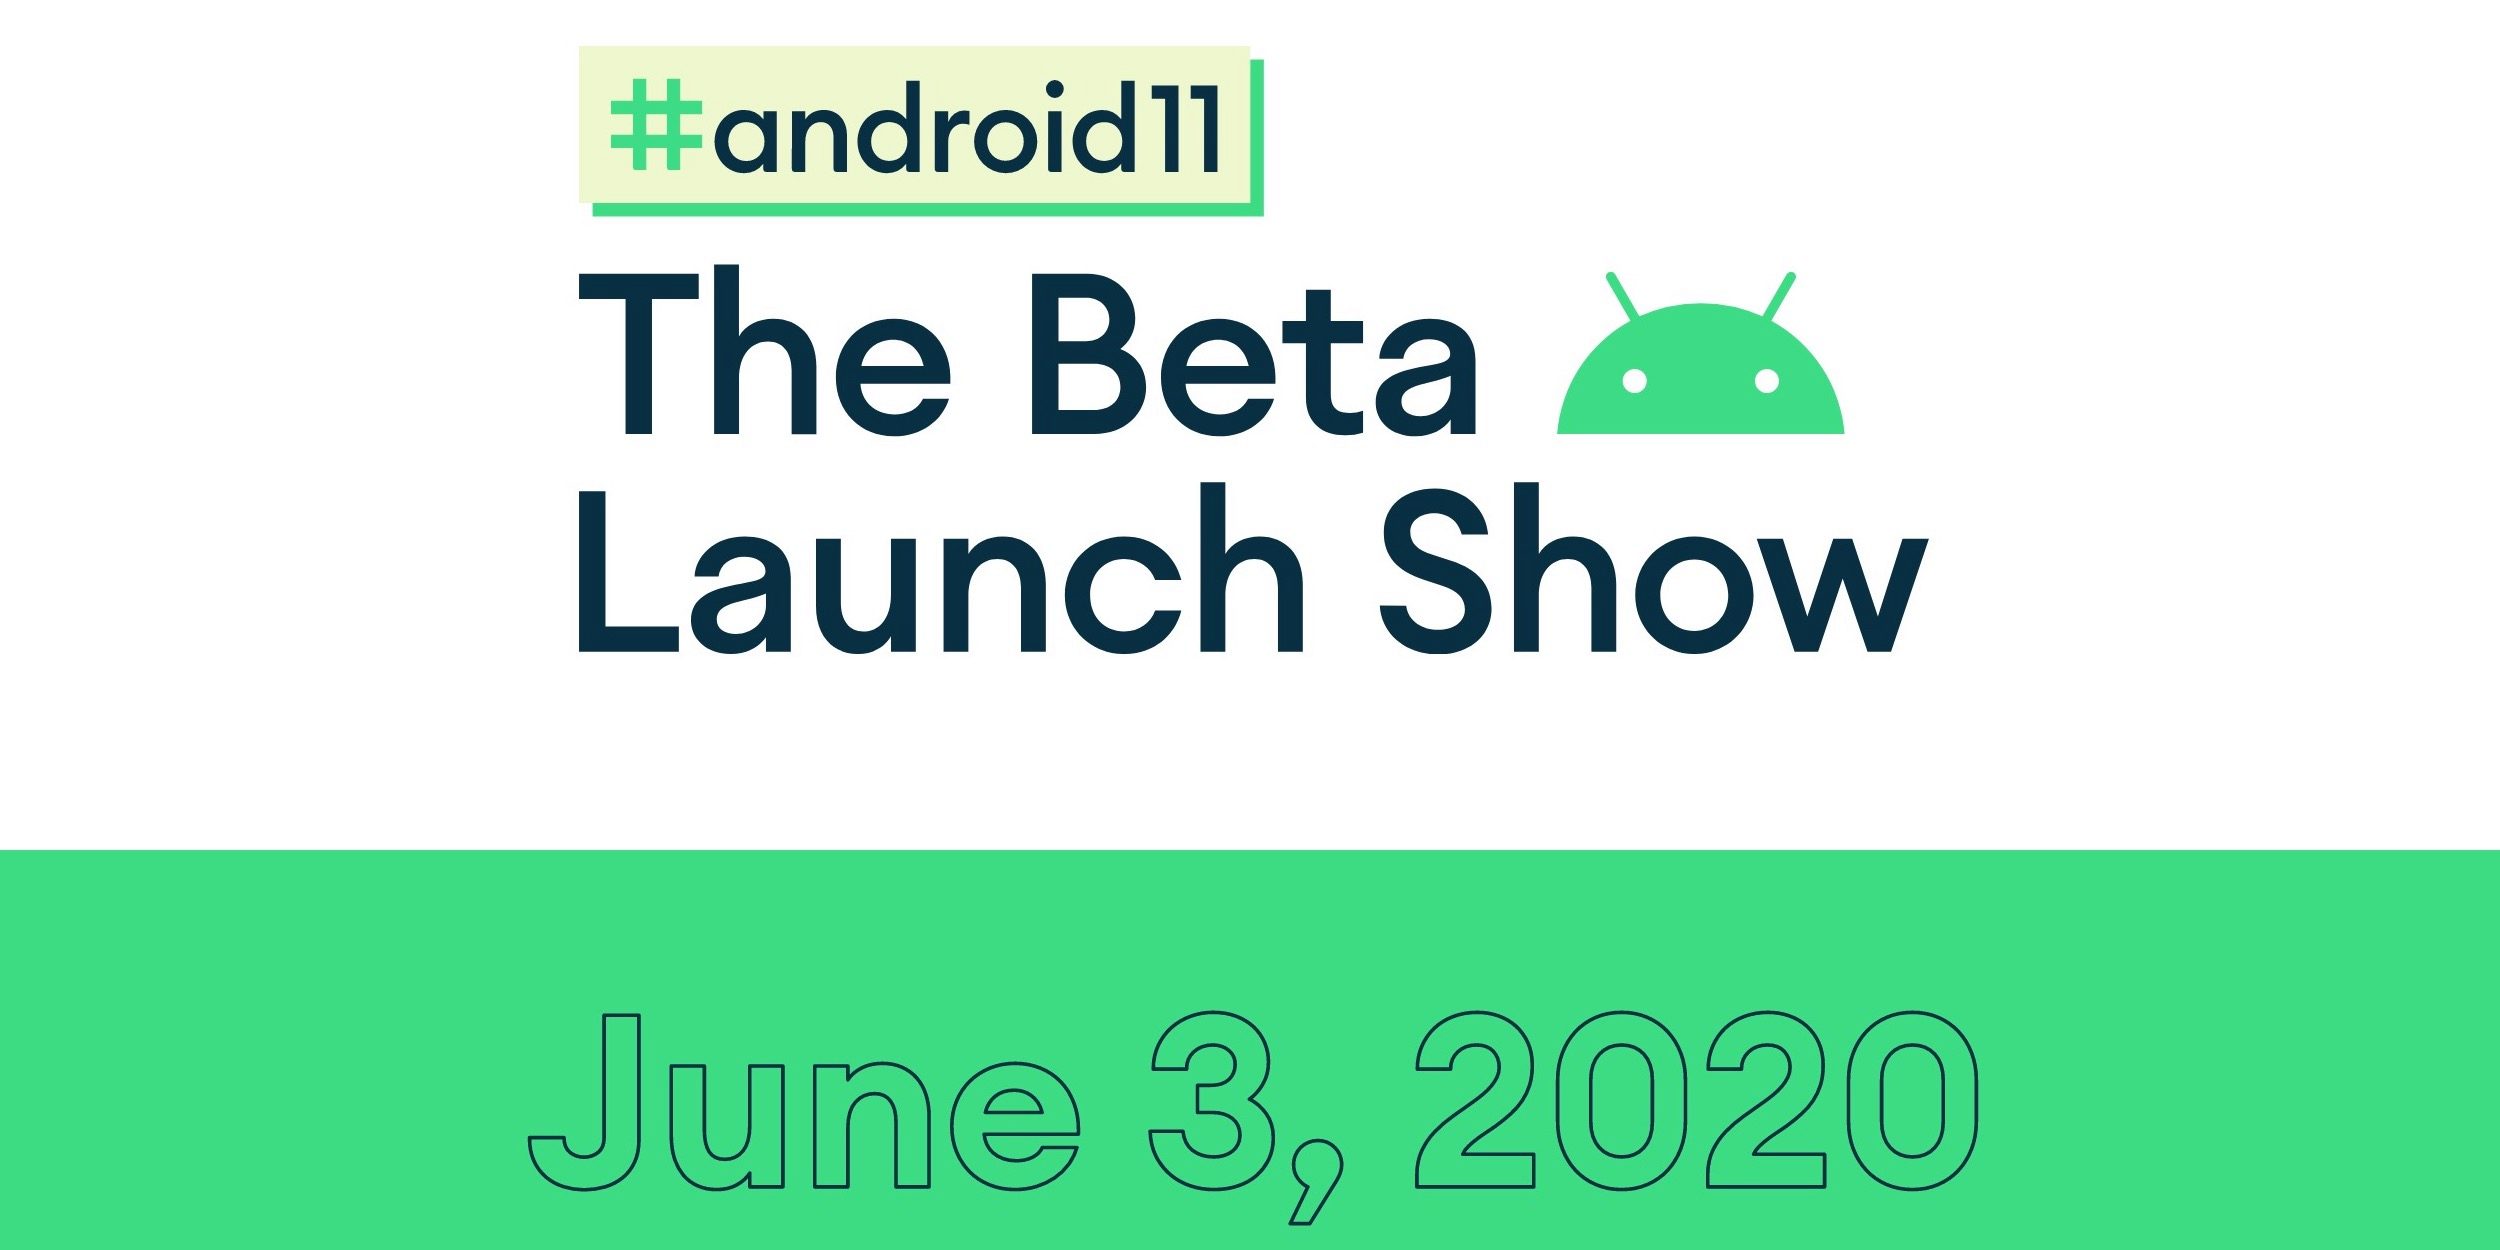 Google visualiza Android 11: Beta Launch Show, incluindo palestras de desenvolvedores